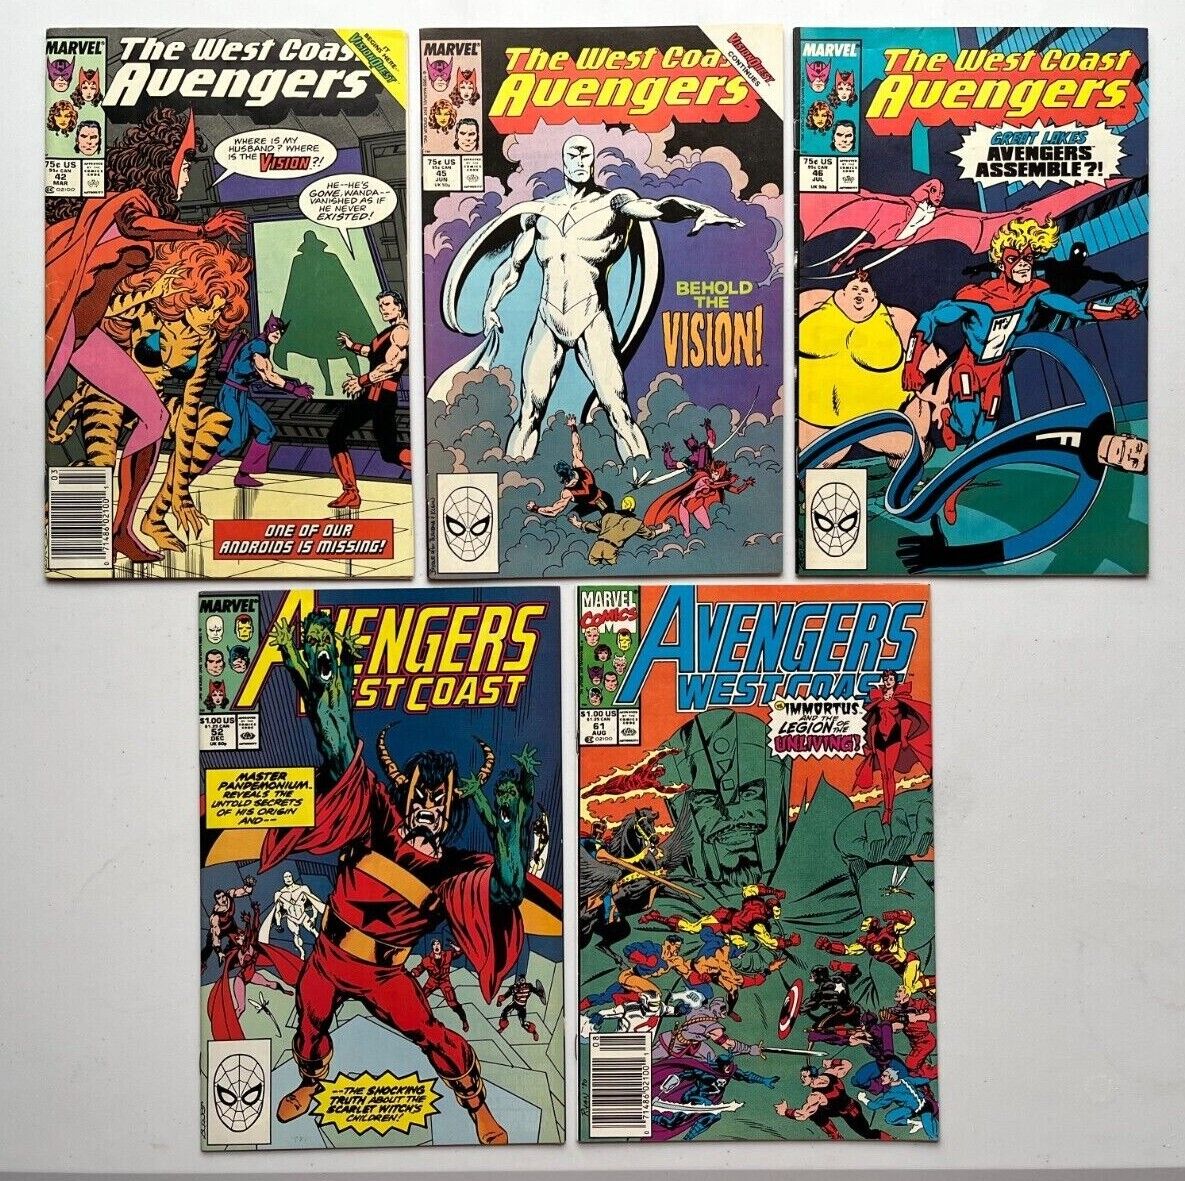 West Coast Avengers # 42 45 46 52 & 61 (Marvel 1989) 1st App White Vision